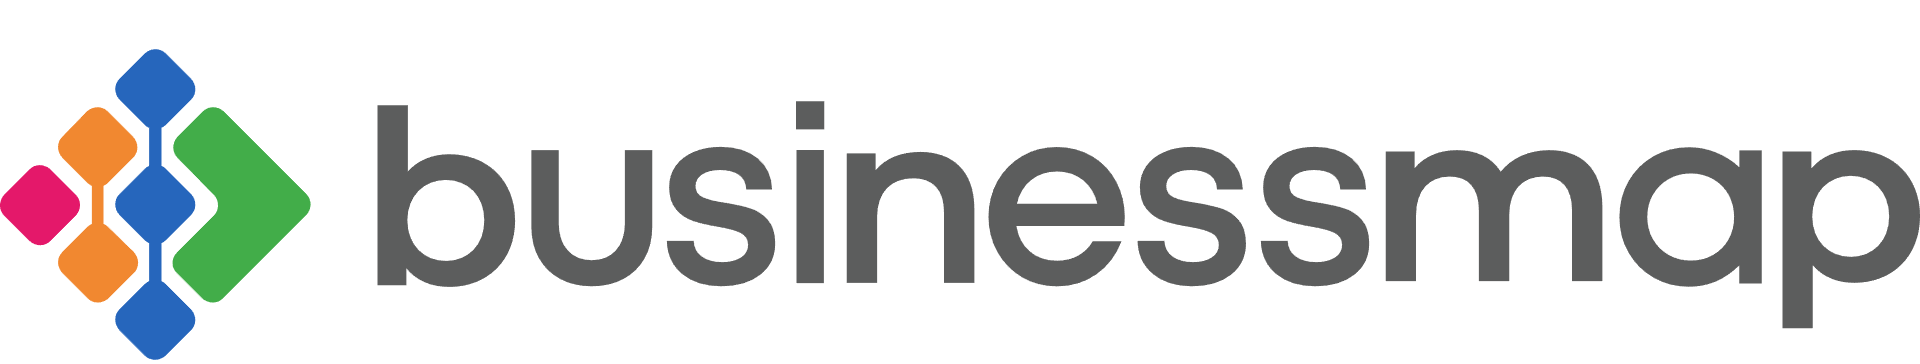 Businessmap-logo.PNG